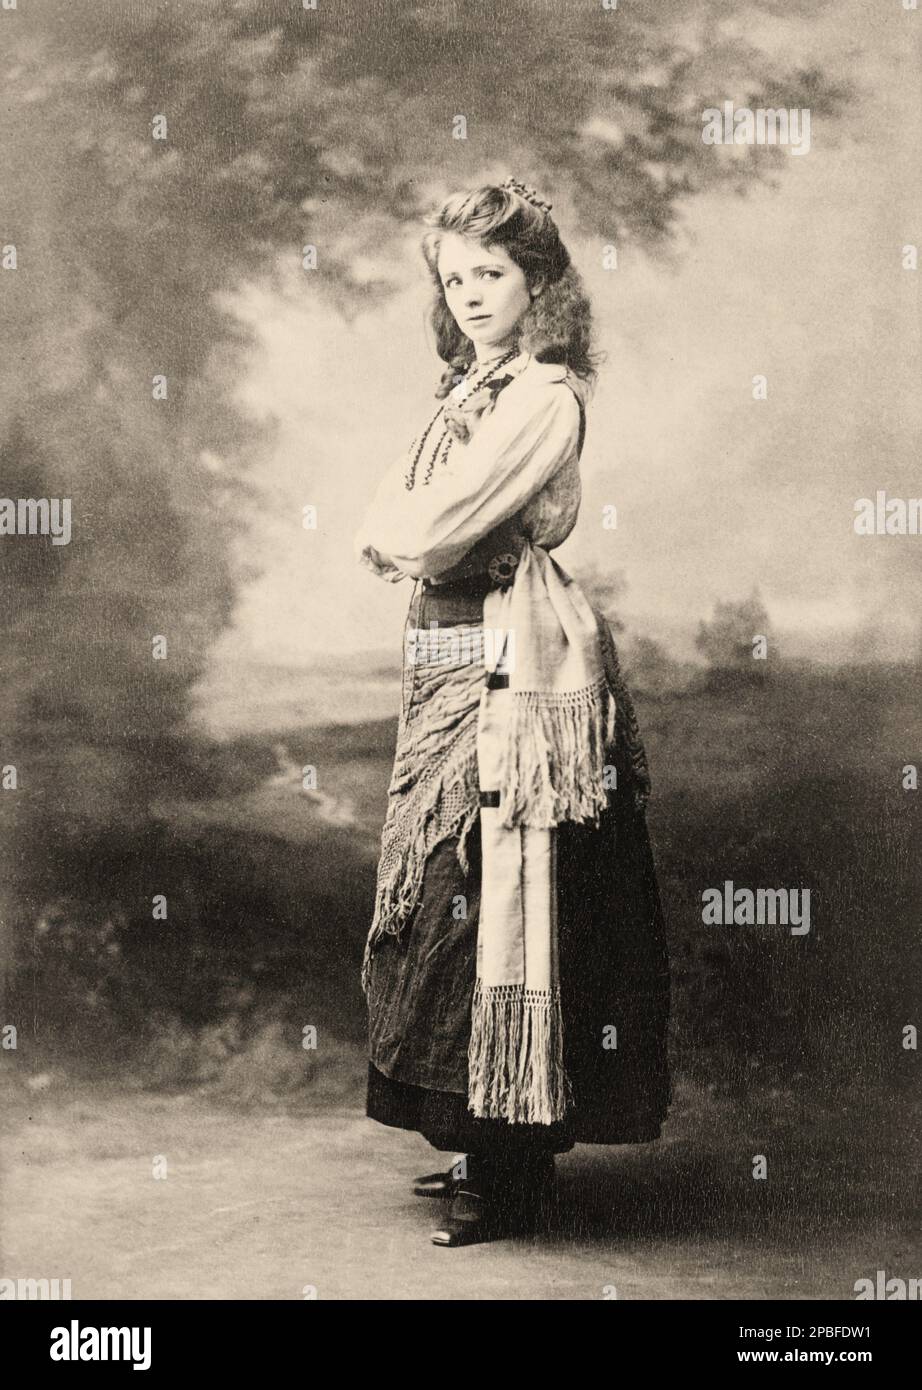 1898 Ca , New York , USA : die amerikanische Theaterdarstellerin MAUDE ADAMS ( 1972 - 1953 ). Während der Titel „Beste Schauspielerin ihres Tages“ fast unbestreitbar Ethel Barrymore gehört, war Maude Adams zweifellos ihre beliebteste und erfolgreichste. Für ihre unzähligen liebenden Fans war sie am besten als einfach „Maudie“ bekannt. Sein berühmtester Name ist Peter Pan von J. M. Barrie - attrice - TEATRO - THEATER - DIVA - DIVINA - BROADWAY - BELLE EPOQUE - collana - Halskette - BELLE EPOQUE --- Archivio GBB Stockfoto